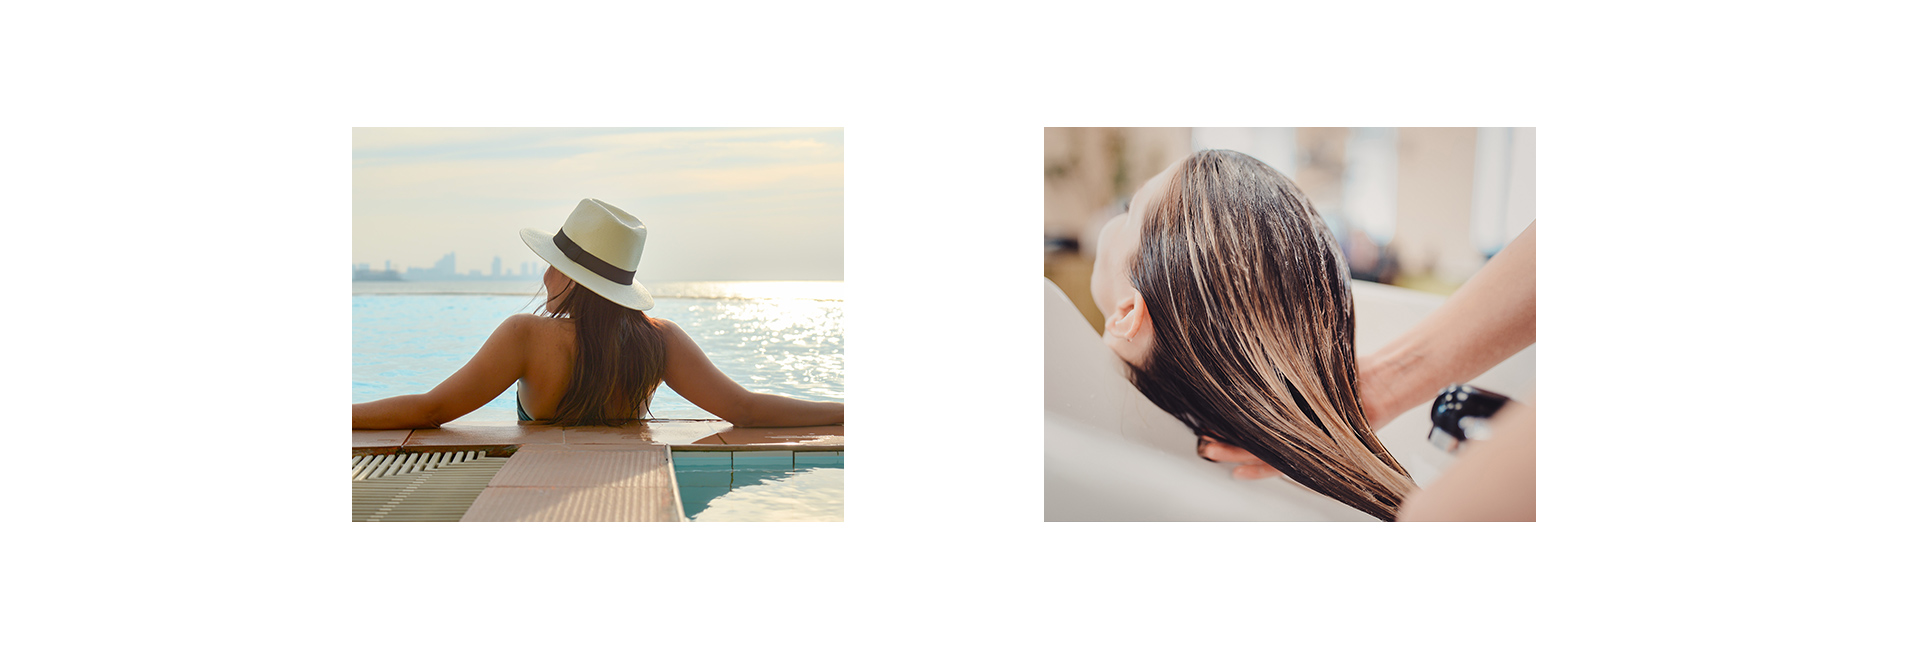 Как ухаживать за волосами на море? топ 3 секрета, как сохранить здоровье волос летом | volosomanjaki.com